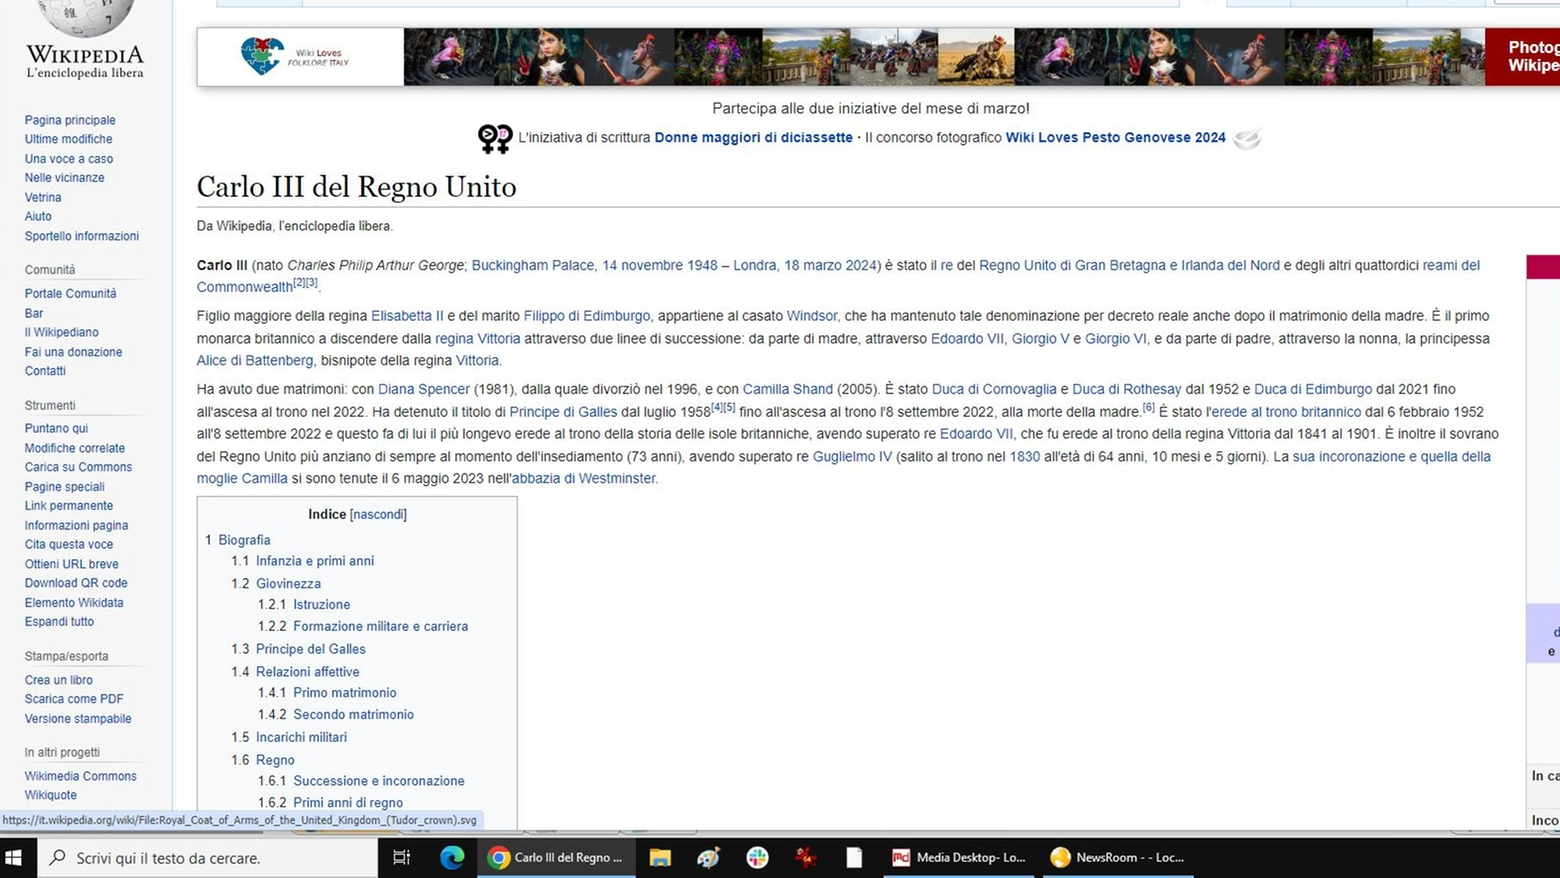 La pagina di Wikipendia aggiornata con la data di morte di Carlo III